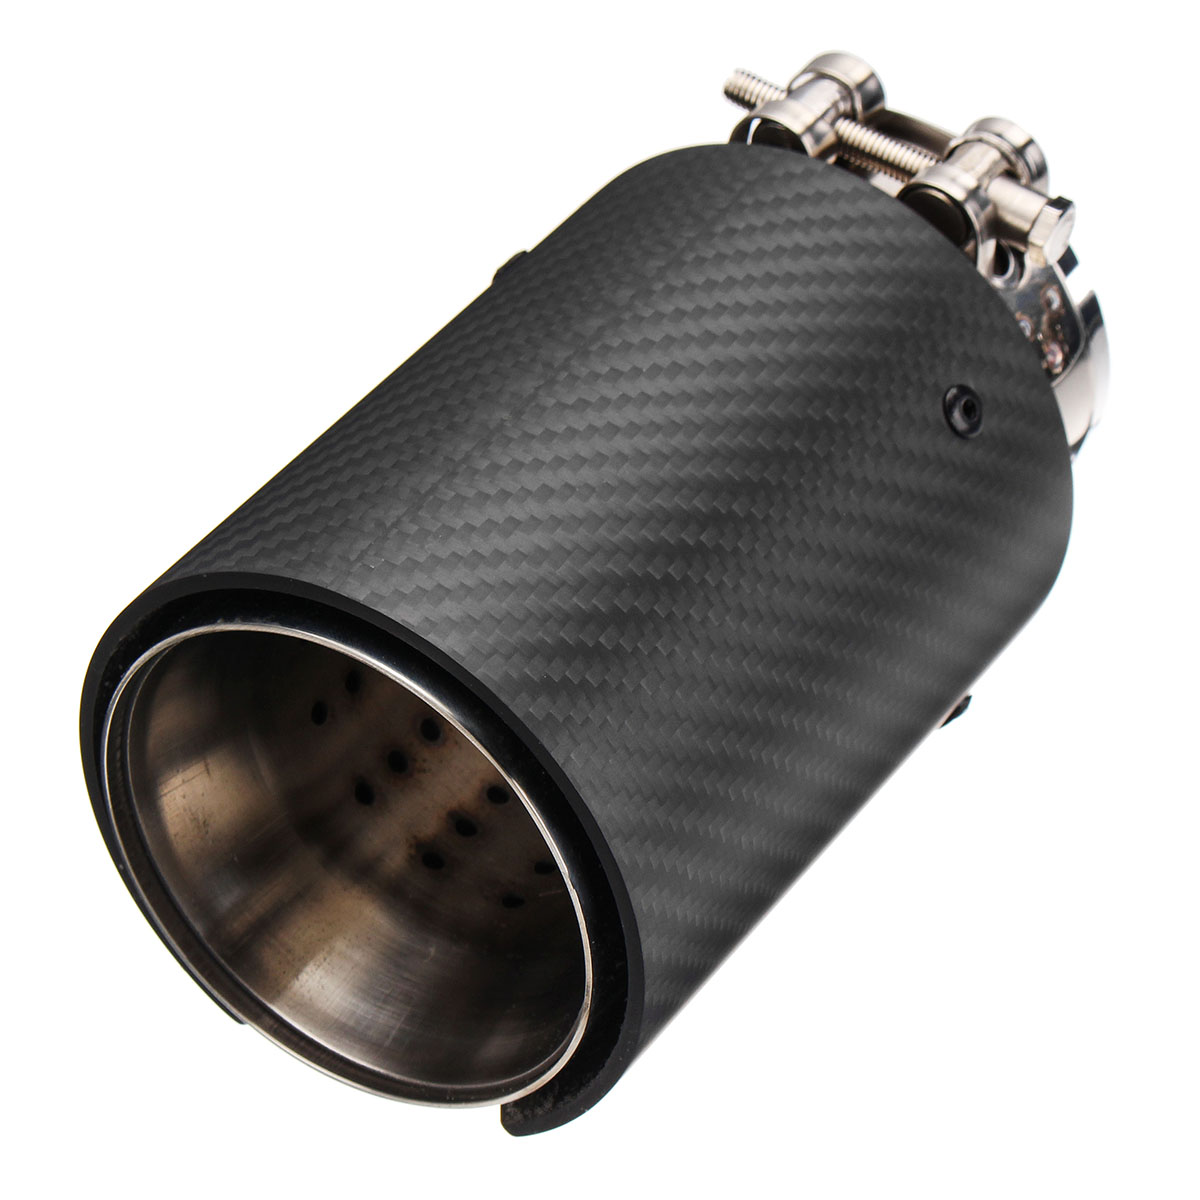 66mm-93mm-Matt-Carbon-Fiber-Rear-Exhaust-Tips-Steel-Muffler-Pipes-For-BMW-M-Series-1561139